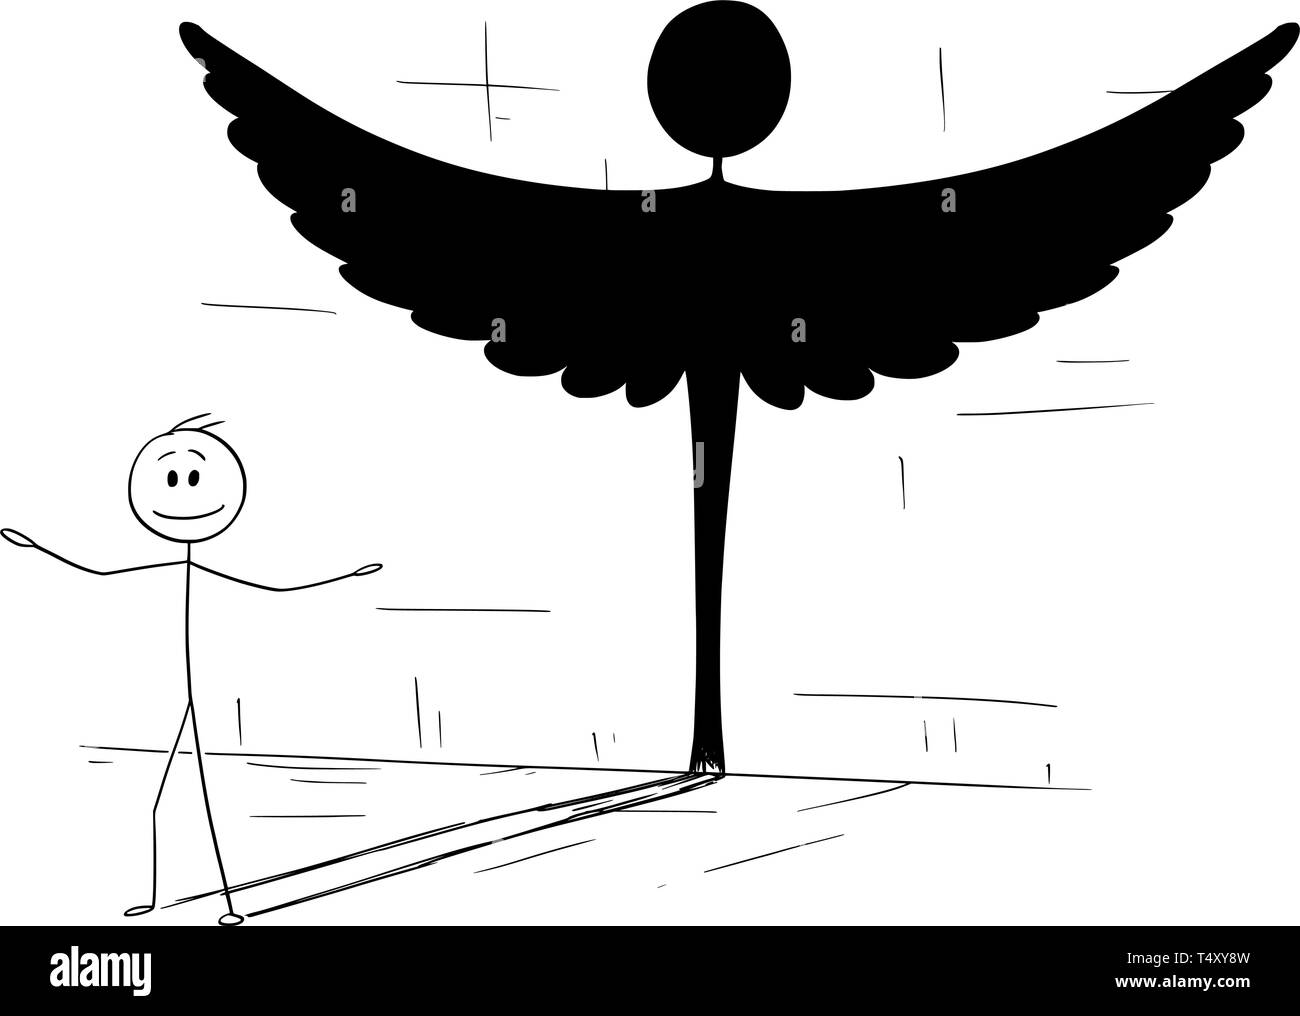 Cartoon Strichmännchen Zeichnen konzeptionelle Darstellung der gute Mensch oder Person werfen Schatten in Form der Engel. Metapher oder wahre Persönlichkeit im Inneren verborgen. Stock Vektor